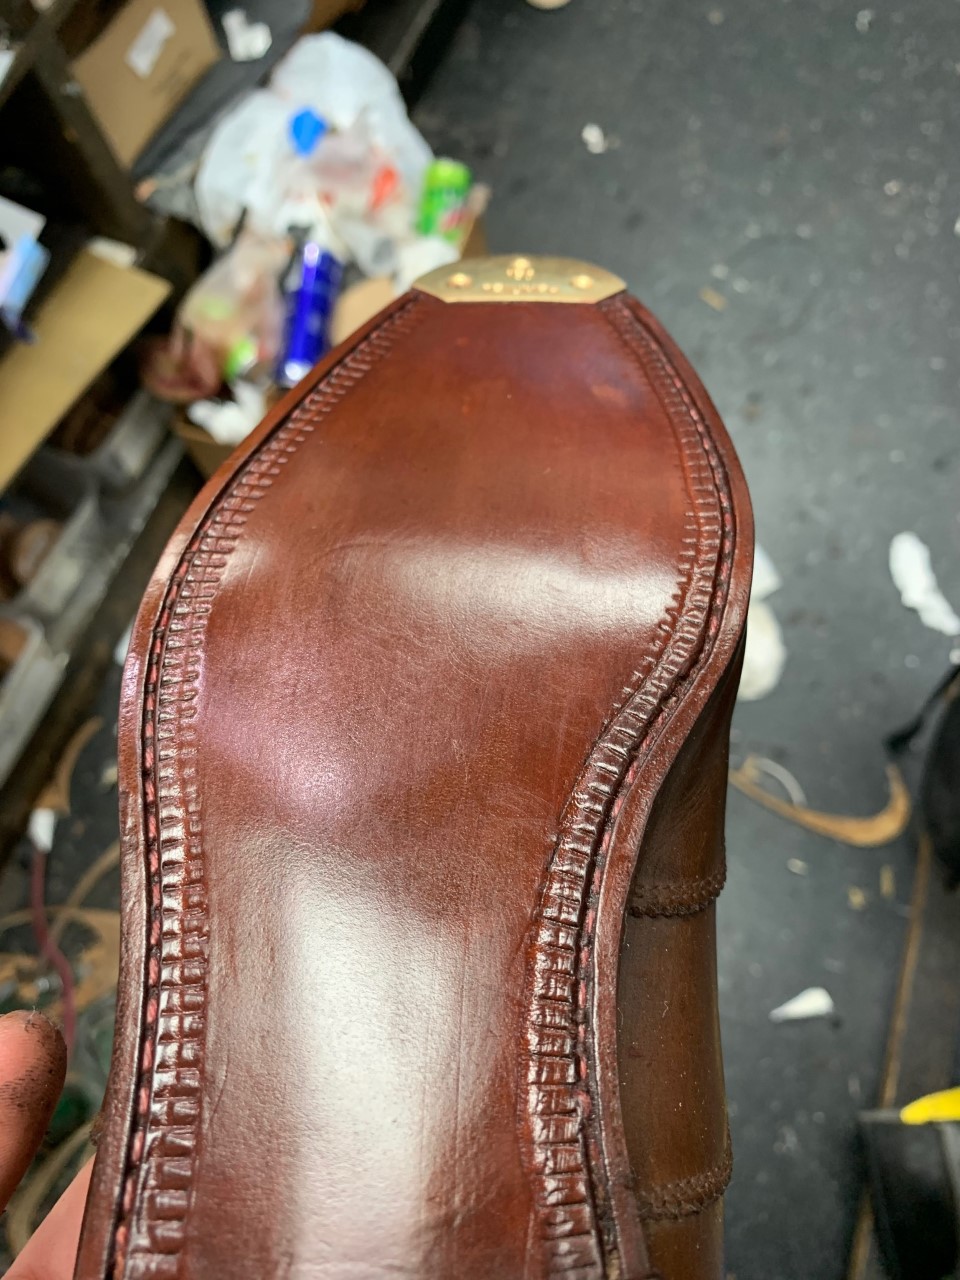 Home- Shoe, Sneaker and Leather Repair - A1 Shoe Repair at Deerwood